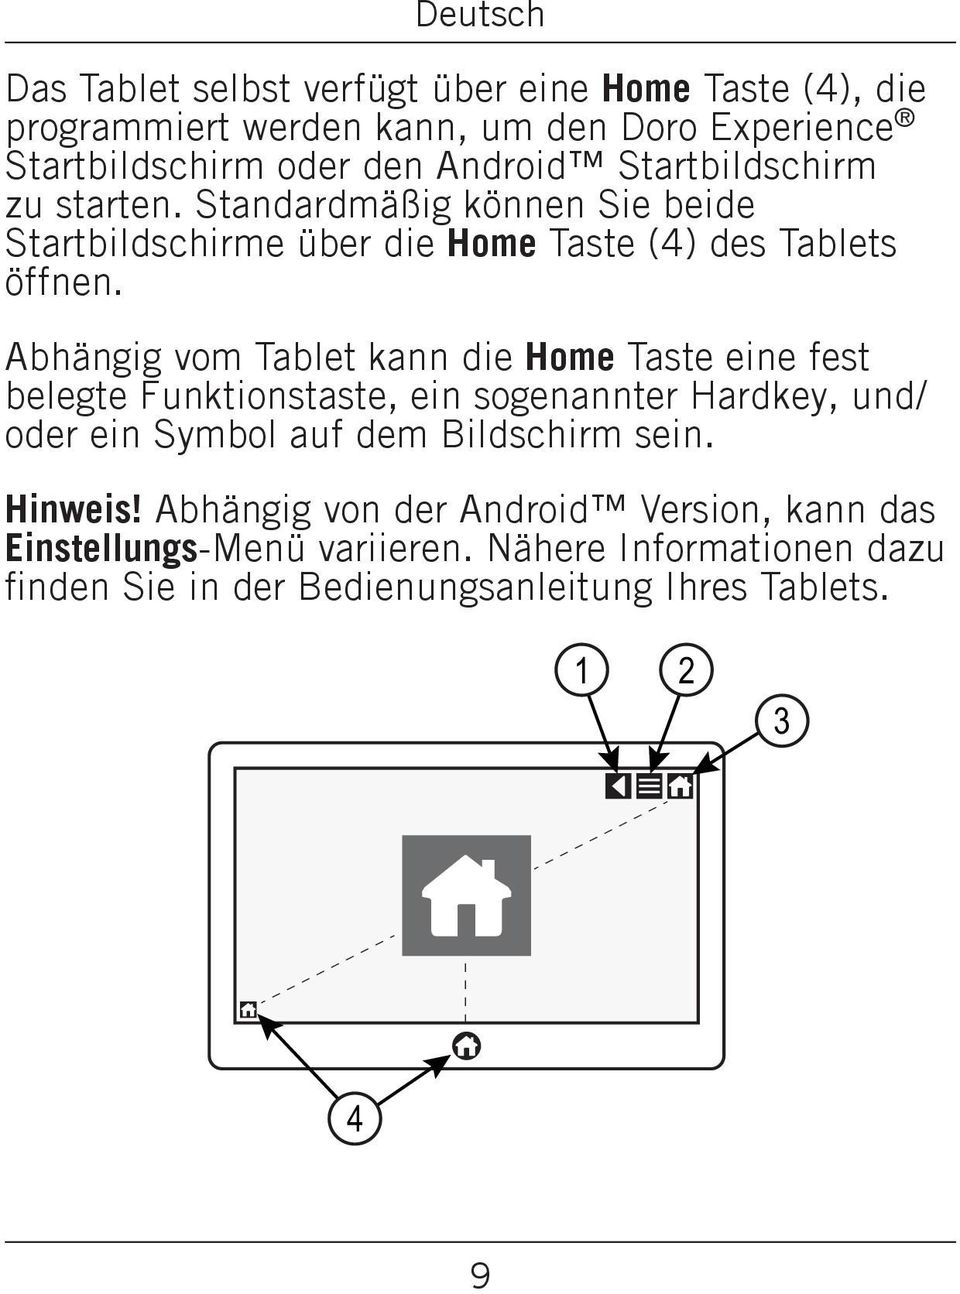 Abhängig vom Tablet kann die Home Taste eine fest belegte Funktionstaste, ein sogenannter Hardkey, und/ oder ein Symbol auf dem Bildschirm